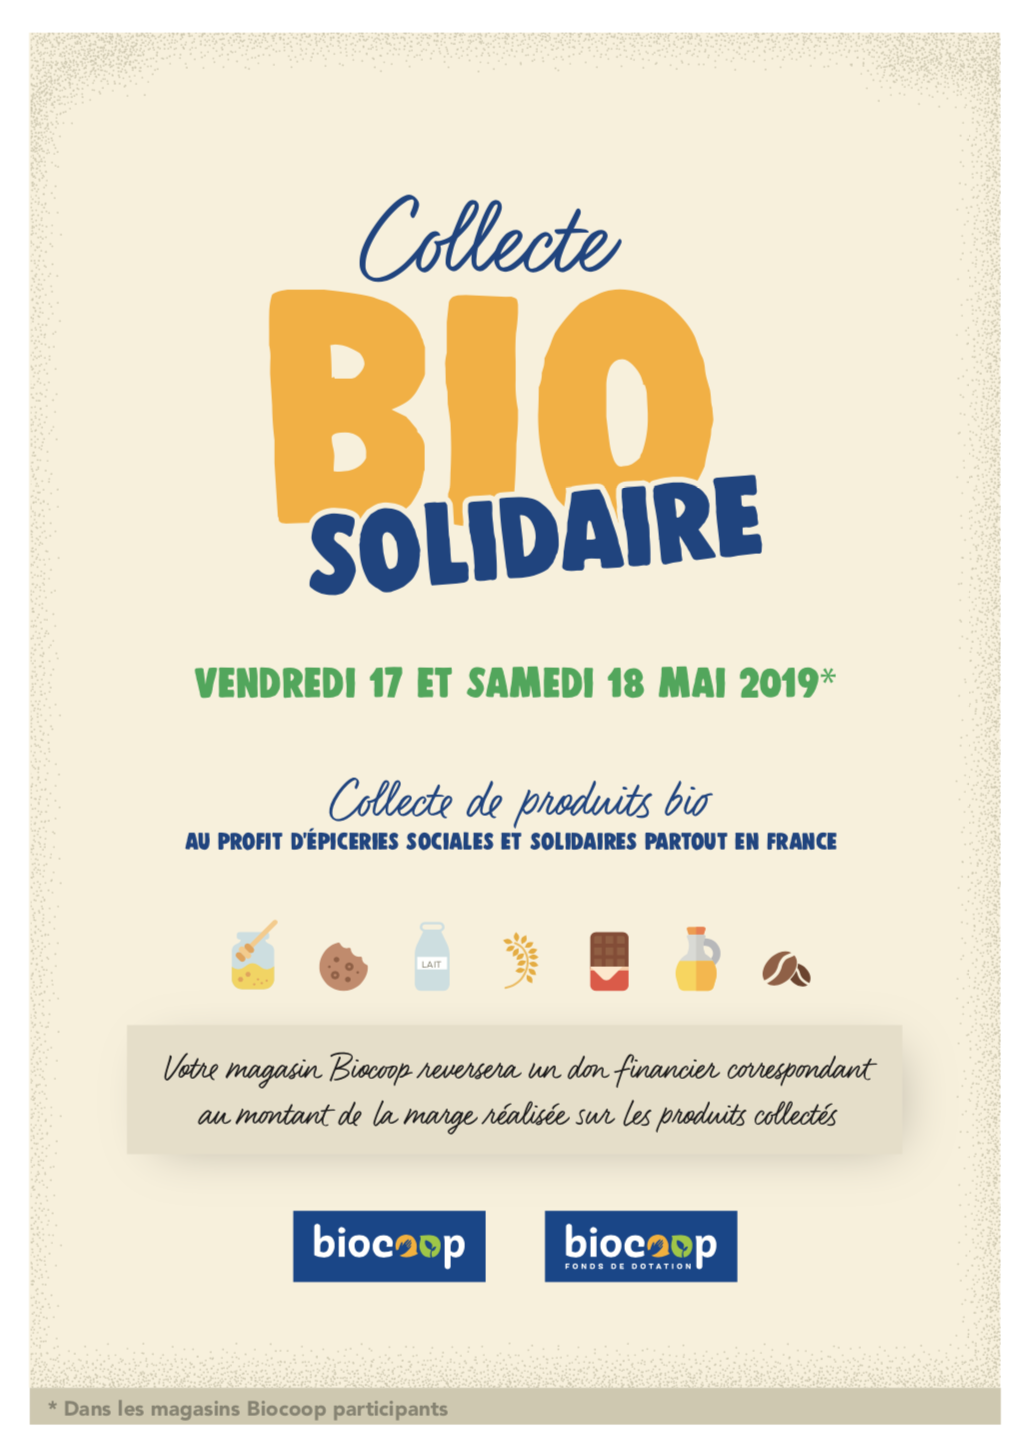 Collecte bio solidaire vendredi 17 et samedi 18 mai